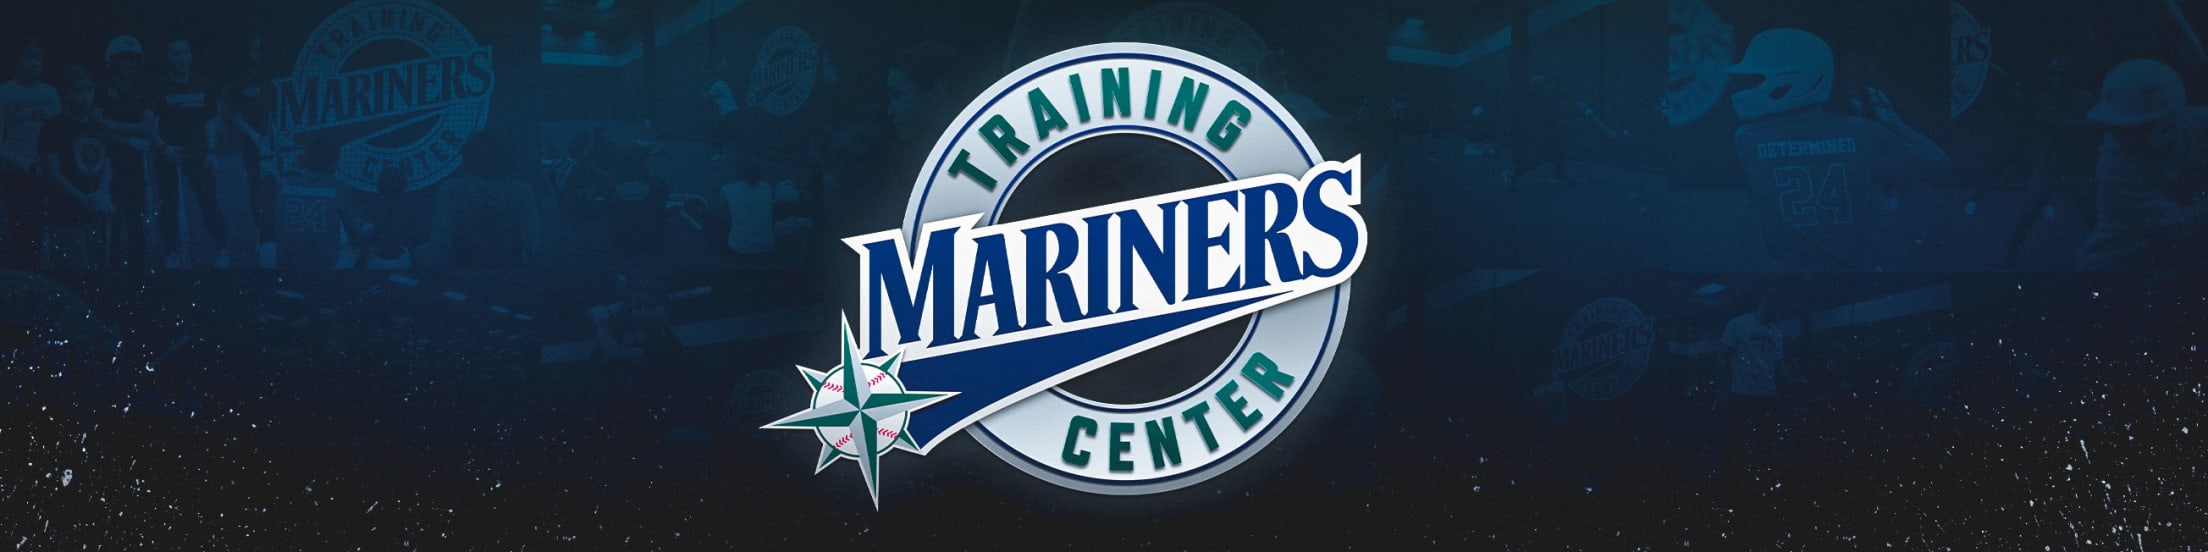 Mariners Training Center